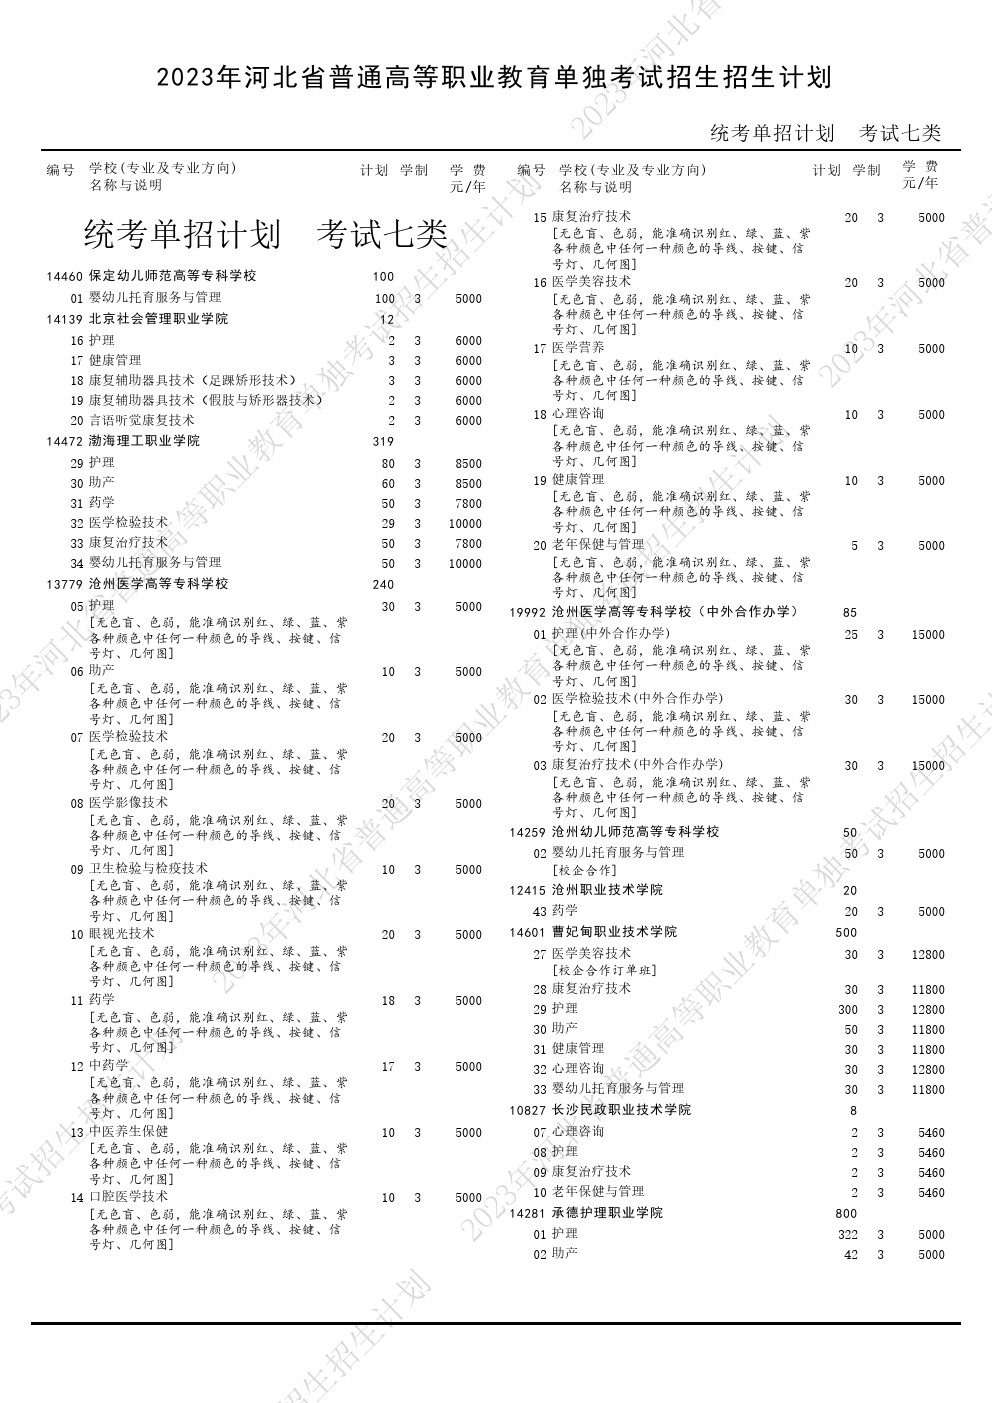 2023年河北省高职单招考试七类招生计划